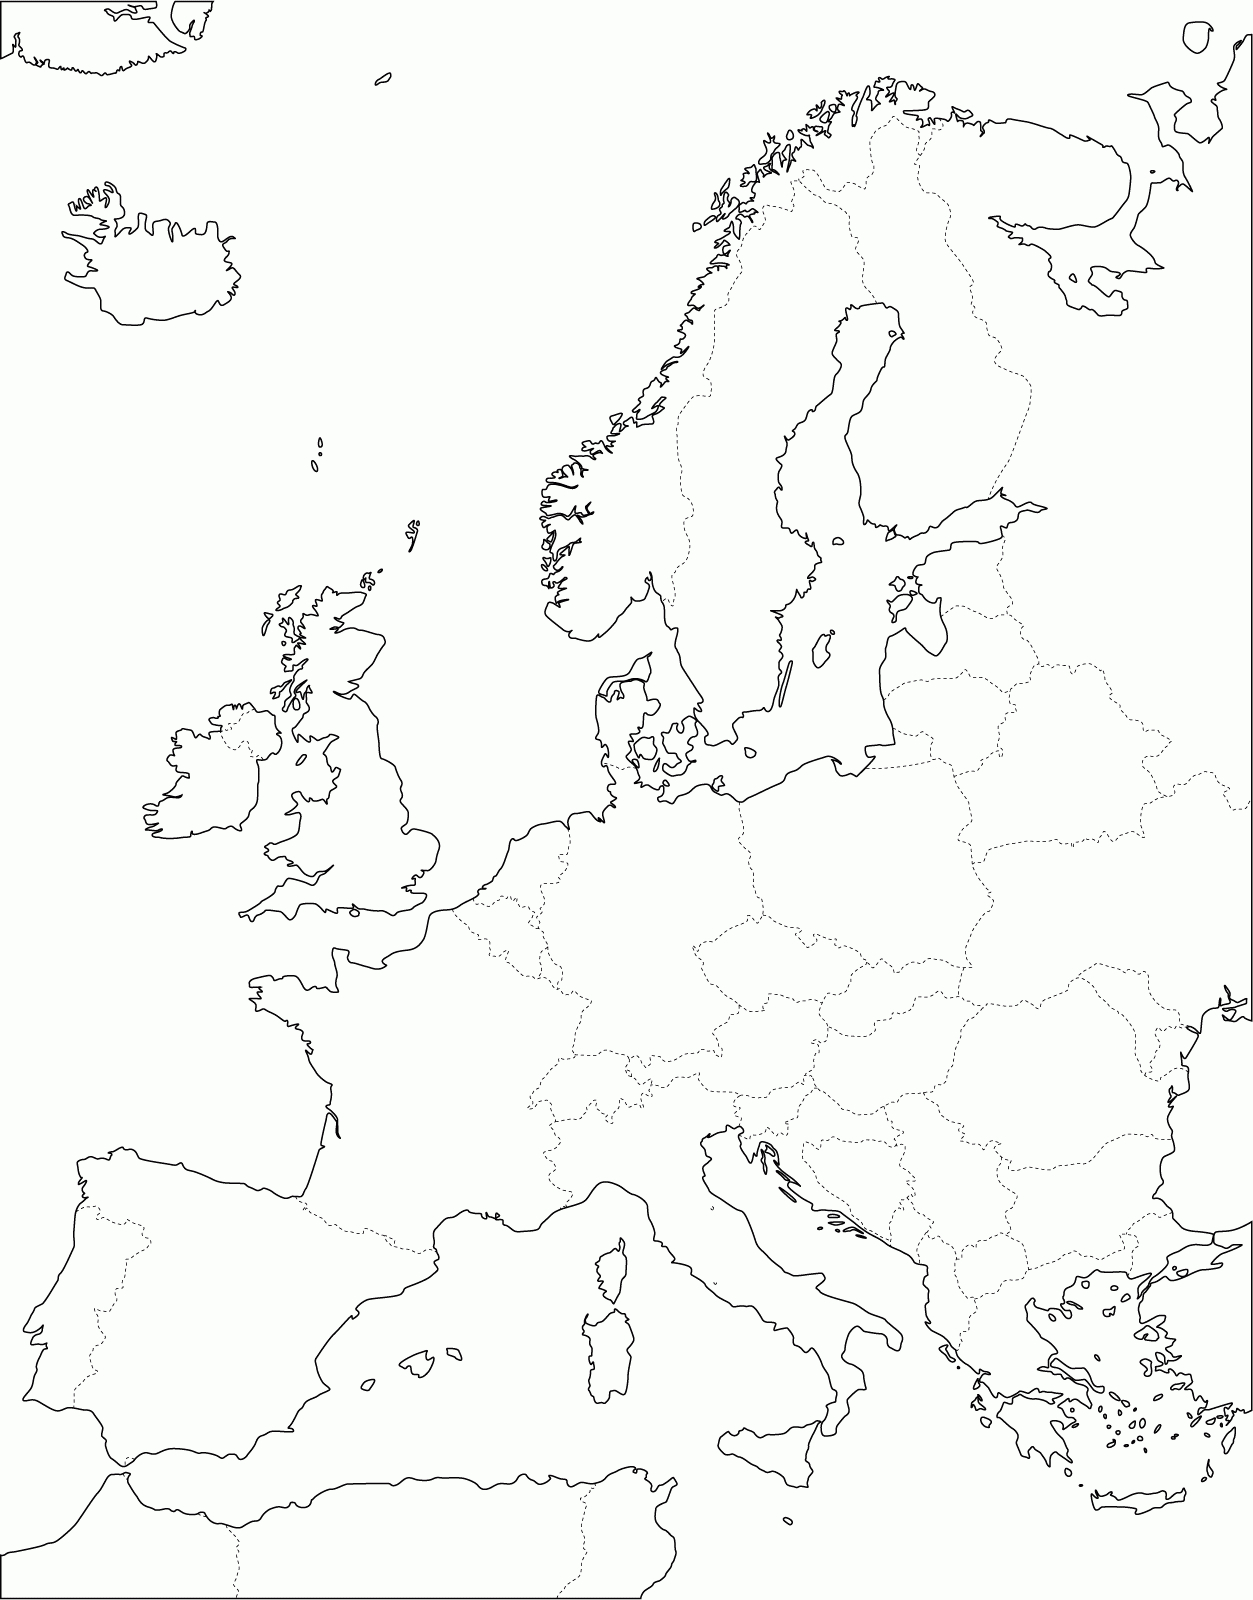 Grande Carte D'europe Vierge Et Blanche À Compléter | Carte tout Carte De L Europe Vierge À Imprimer